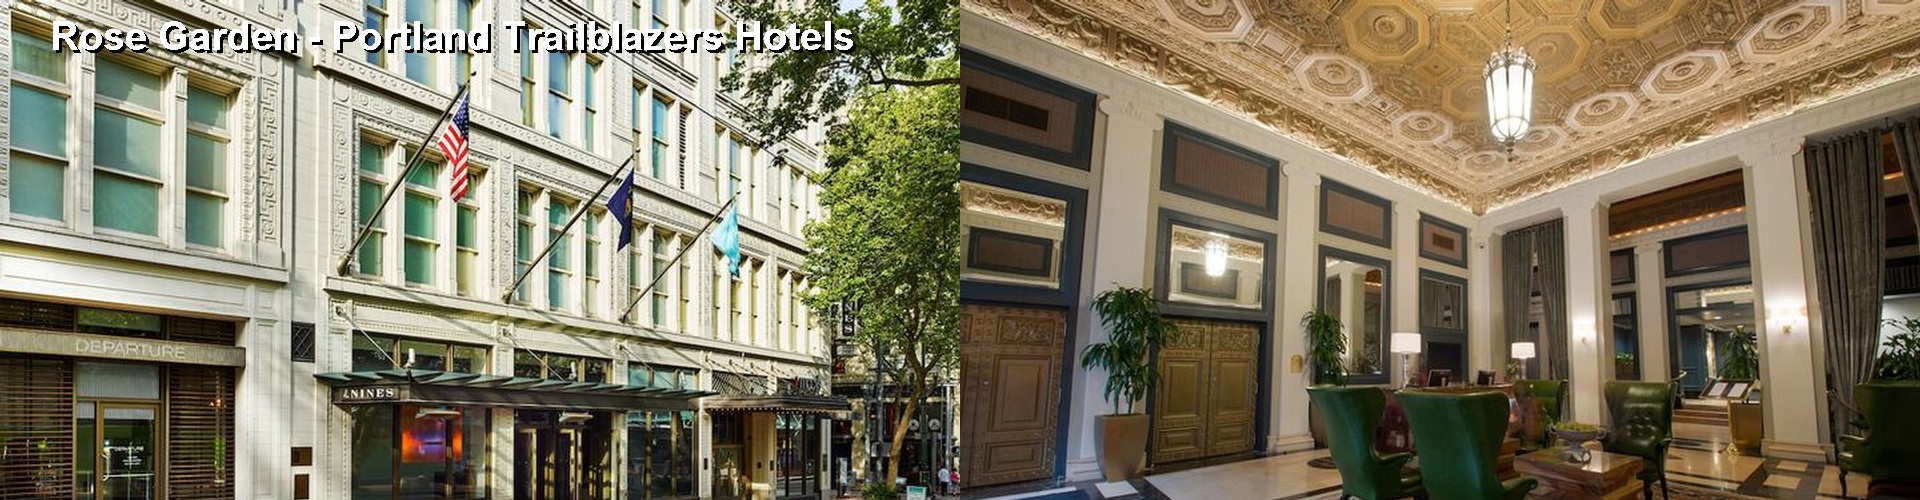 2 Best Hotels near Rose Garden - Portland Trailblazers